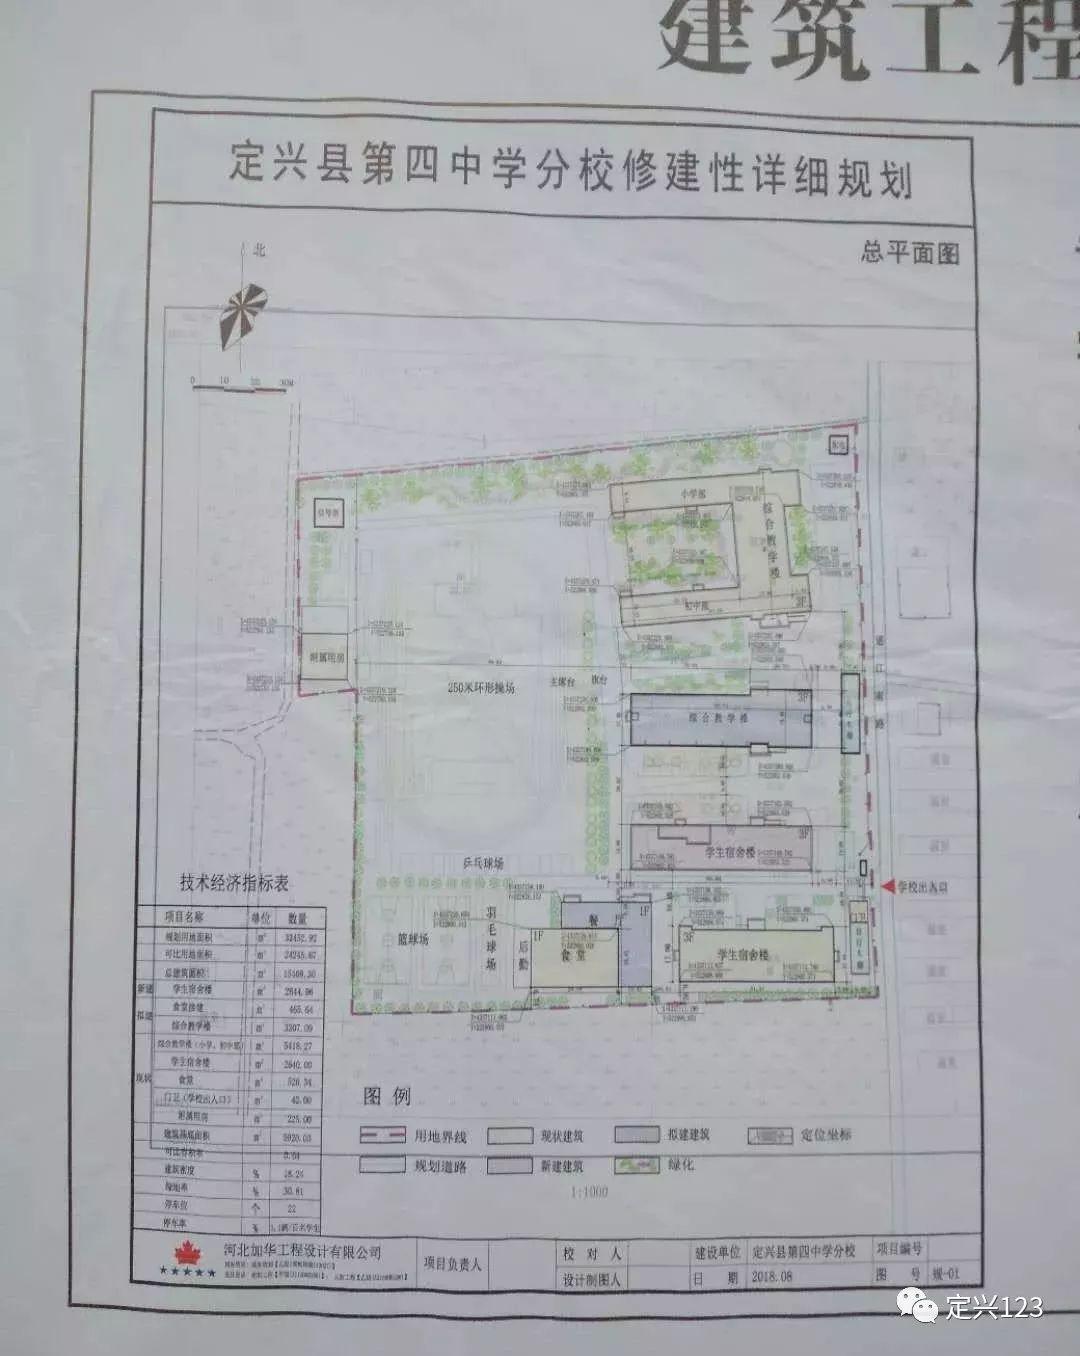 定兴县乡村建设规划许可证,涉及多乡镇.